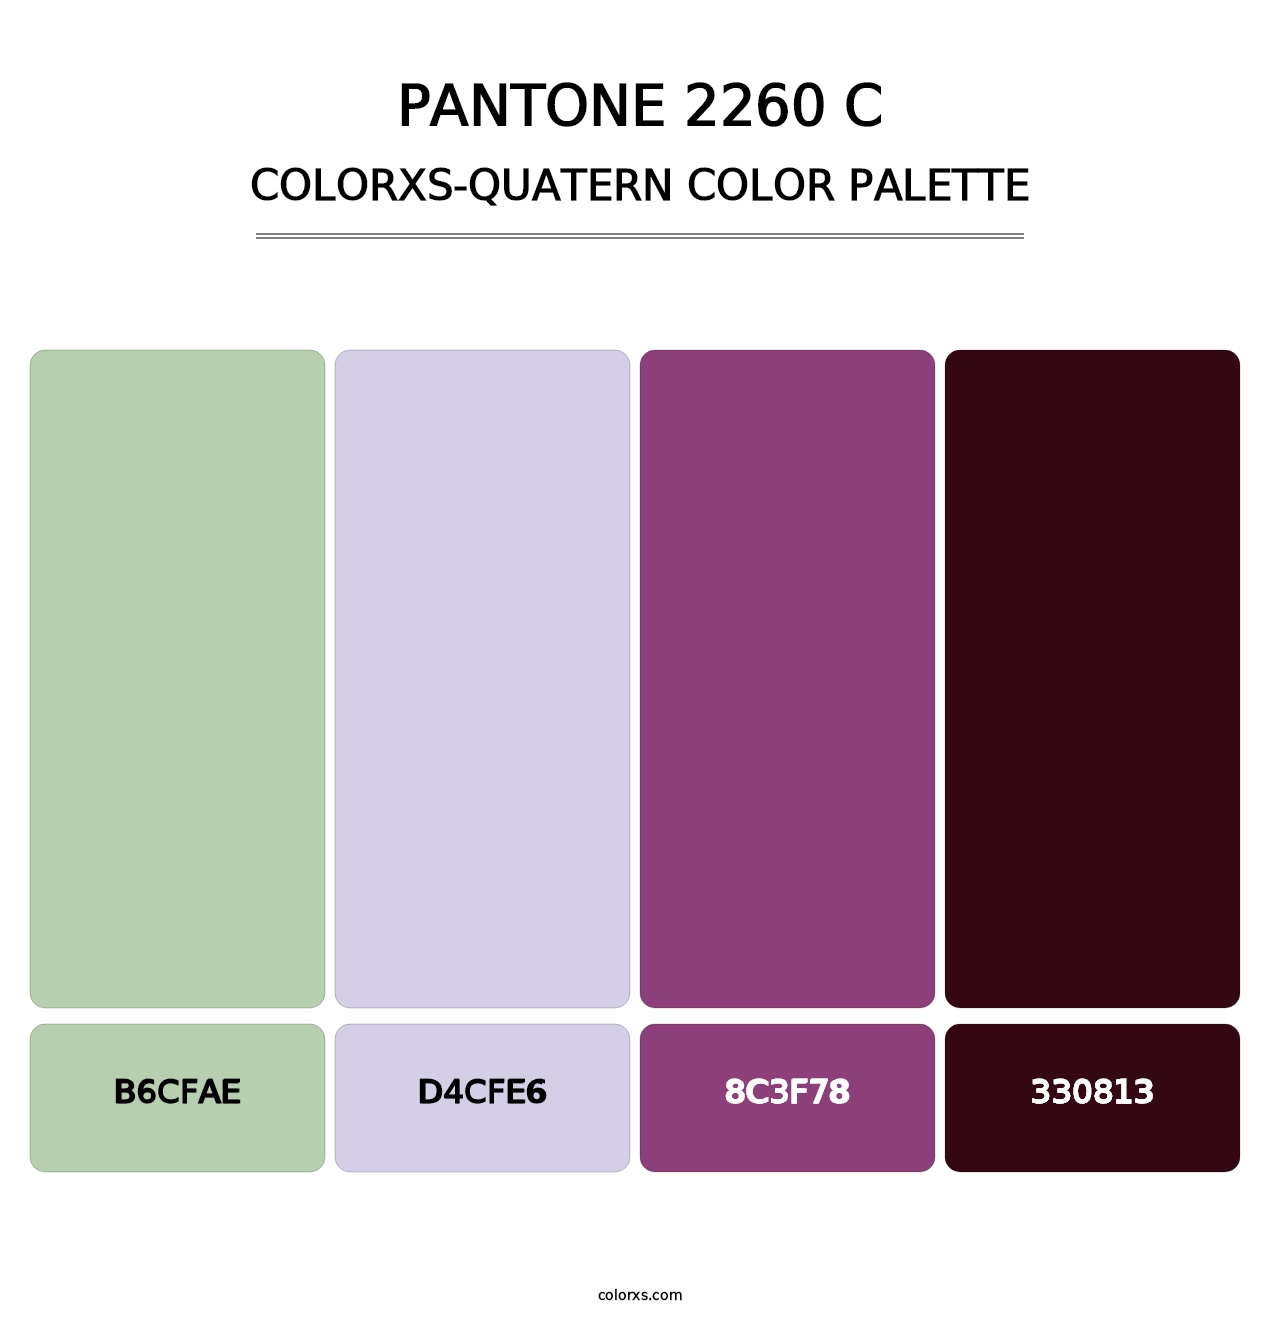 PANTONE 2260 C - Colorxs Quatern Palette